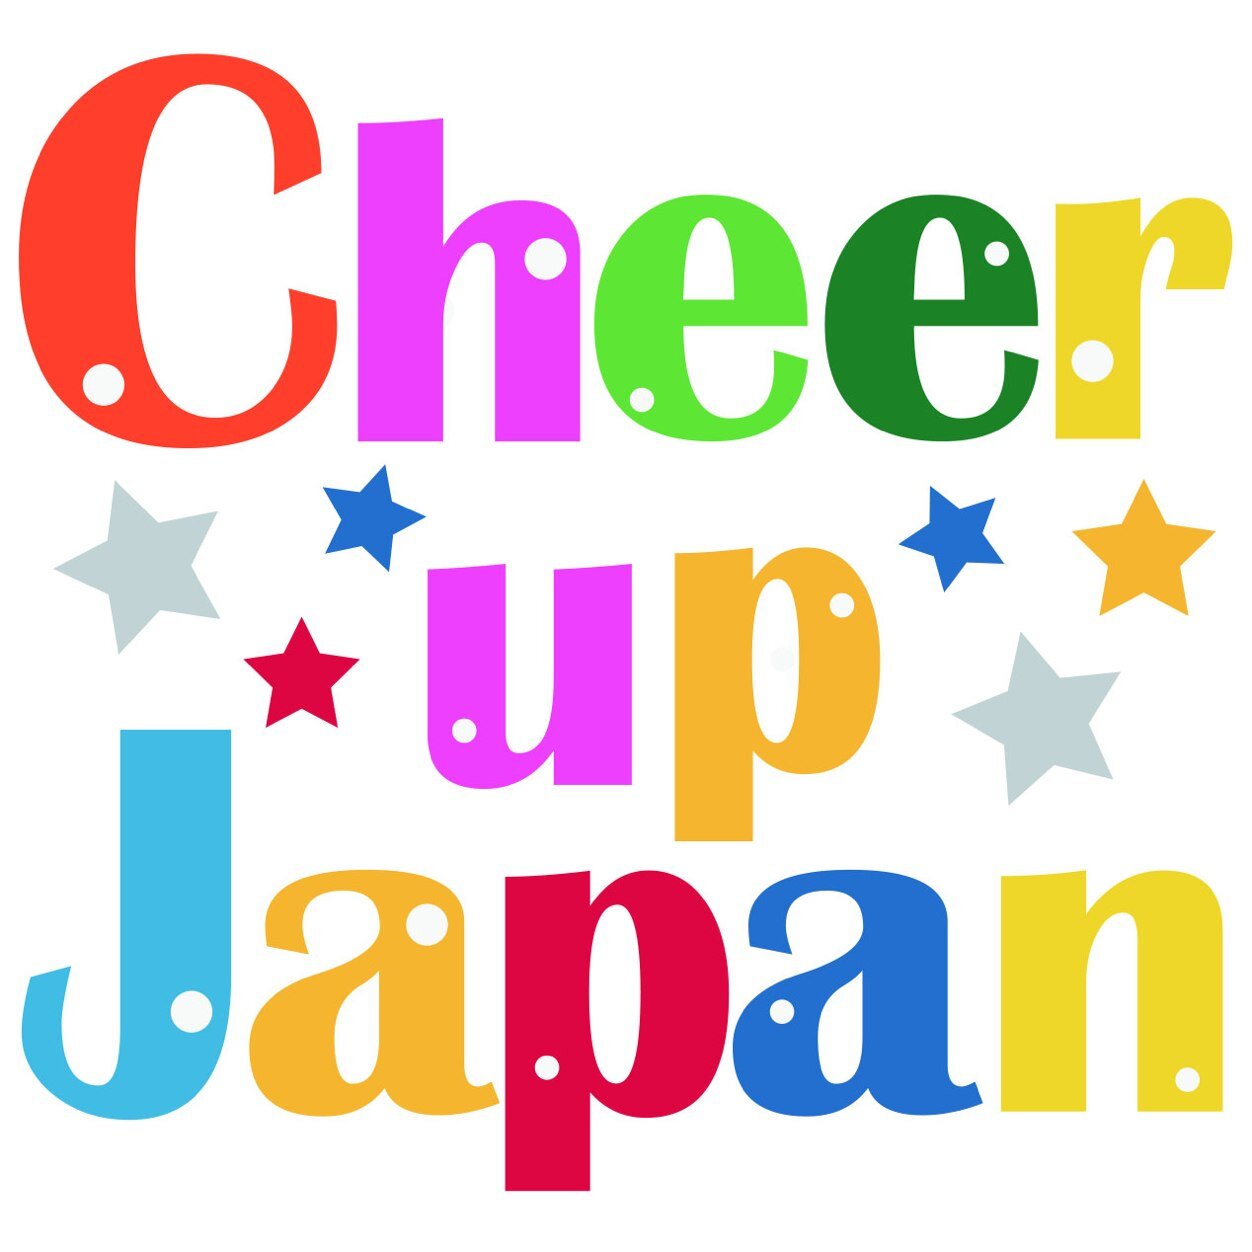 チアで日本を元気に！
チアリーディングに関するいろいろな情報を発信しています。みなさんからの情報もお待ちしています。